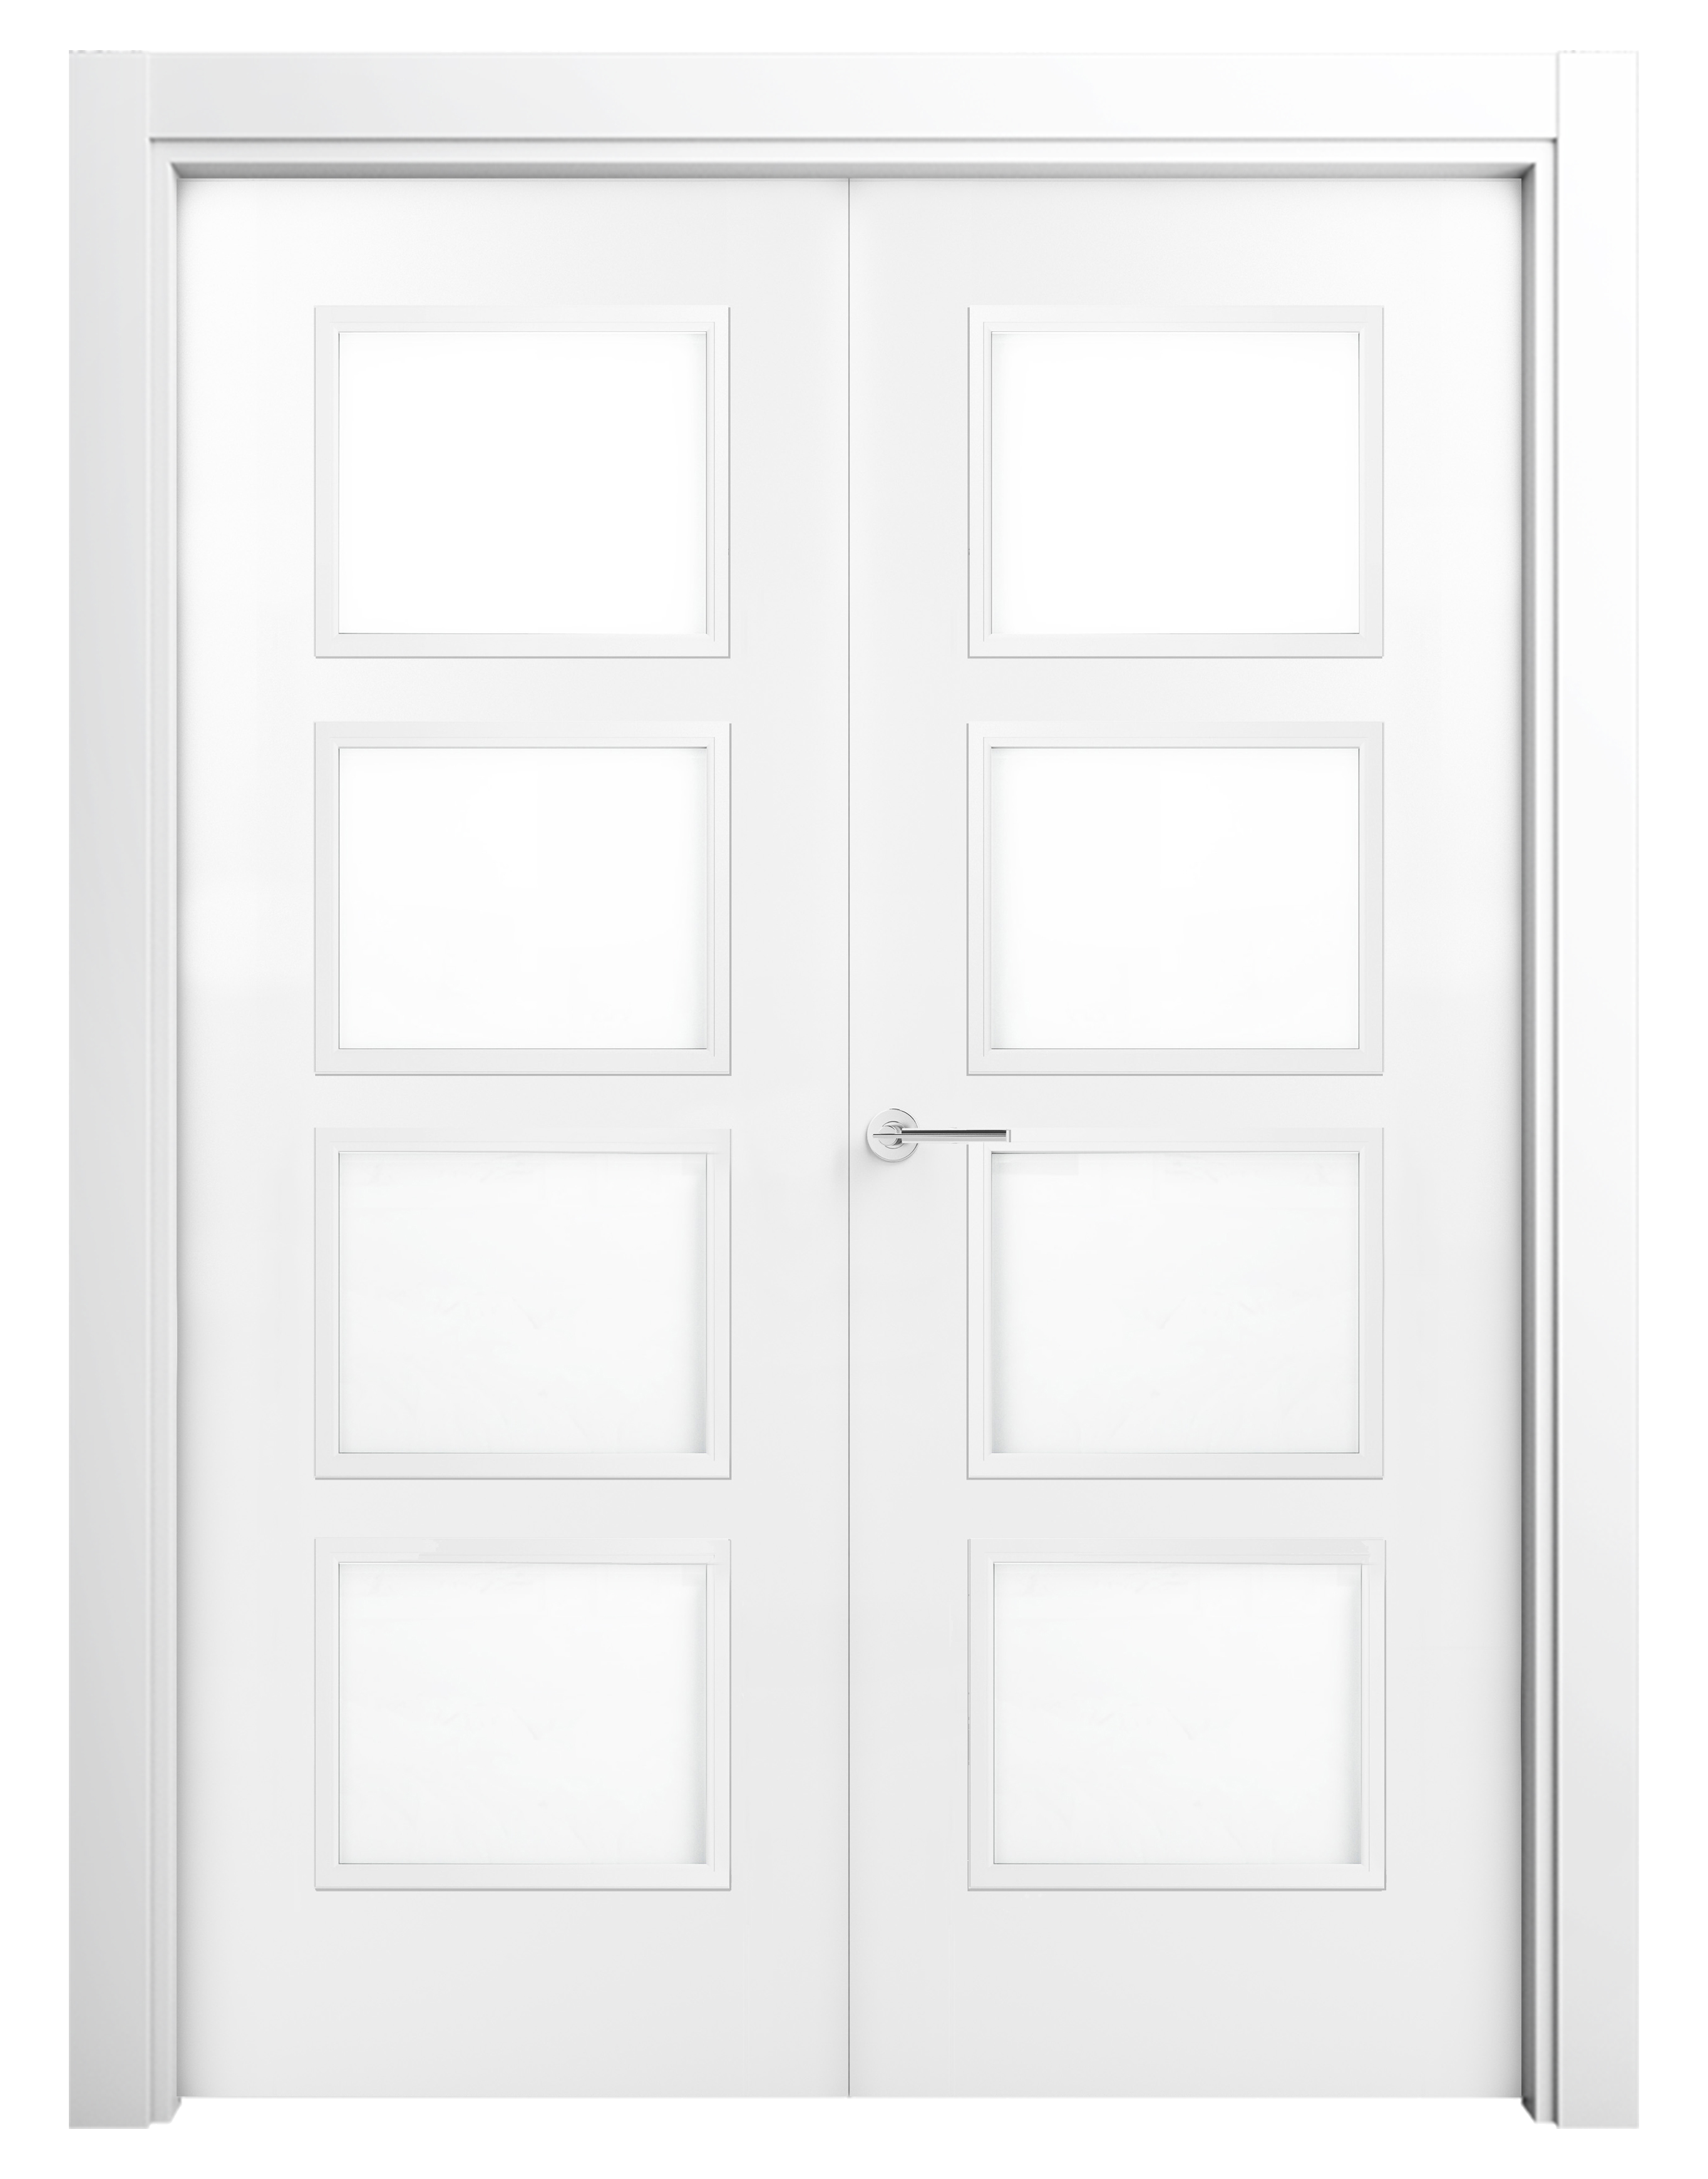 Puerta bari premium blanco de apertura izquierda de 82.50 cm